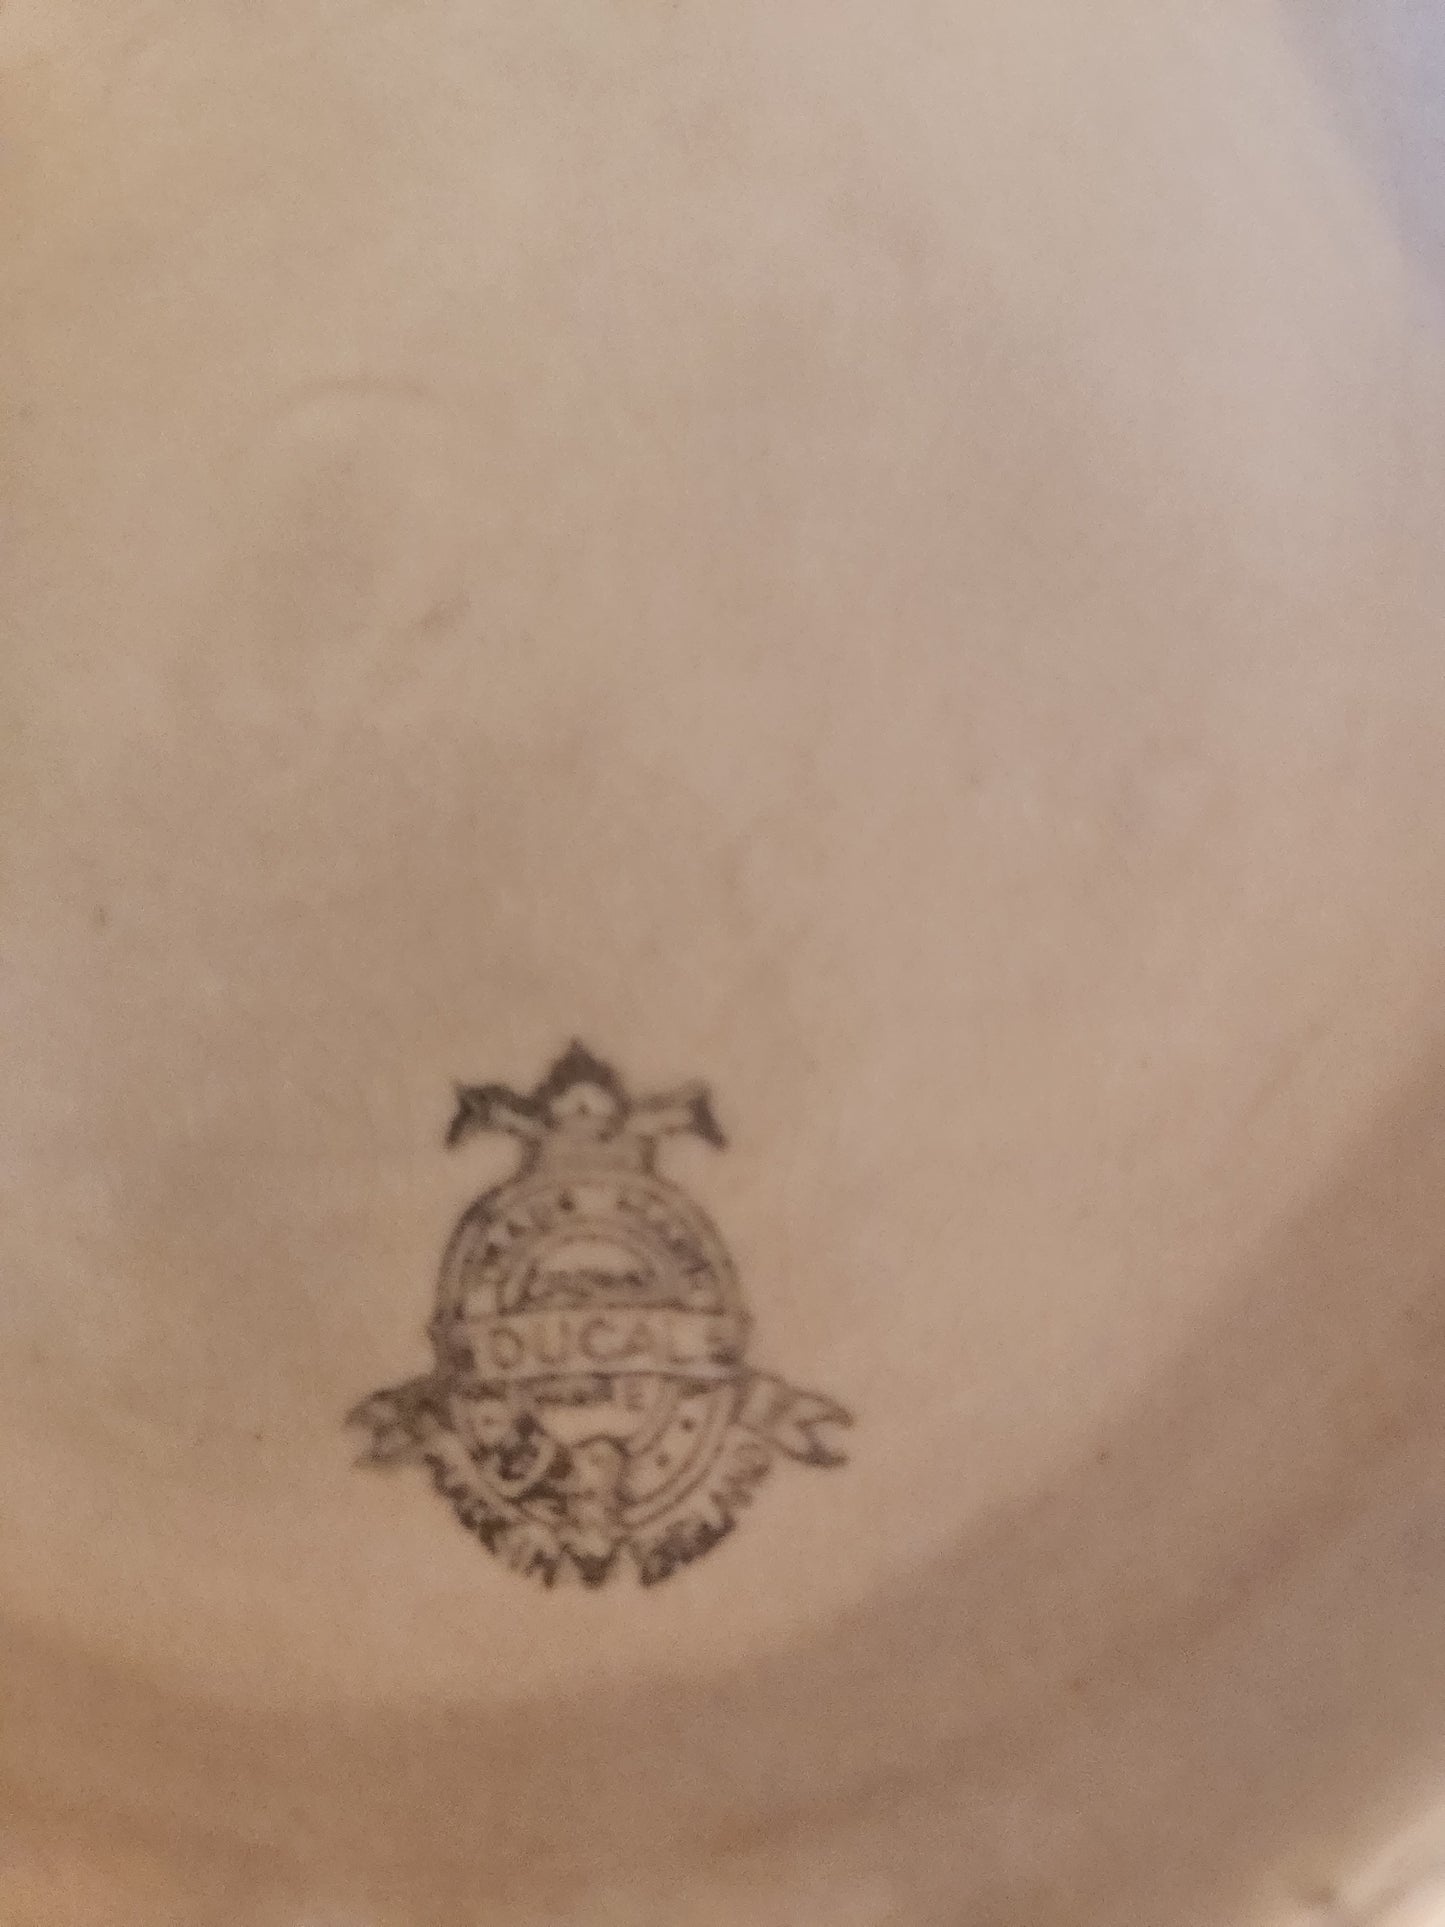 Crown Ducal Spongeware Ceramic Bowl